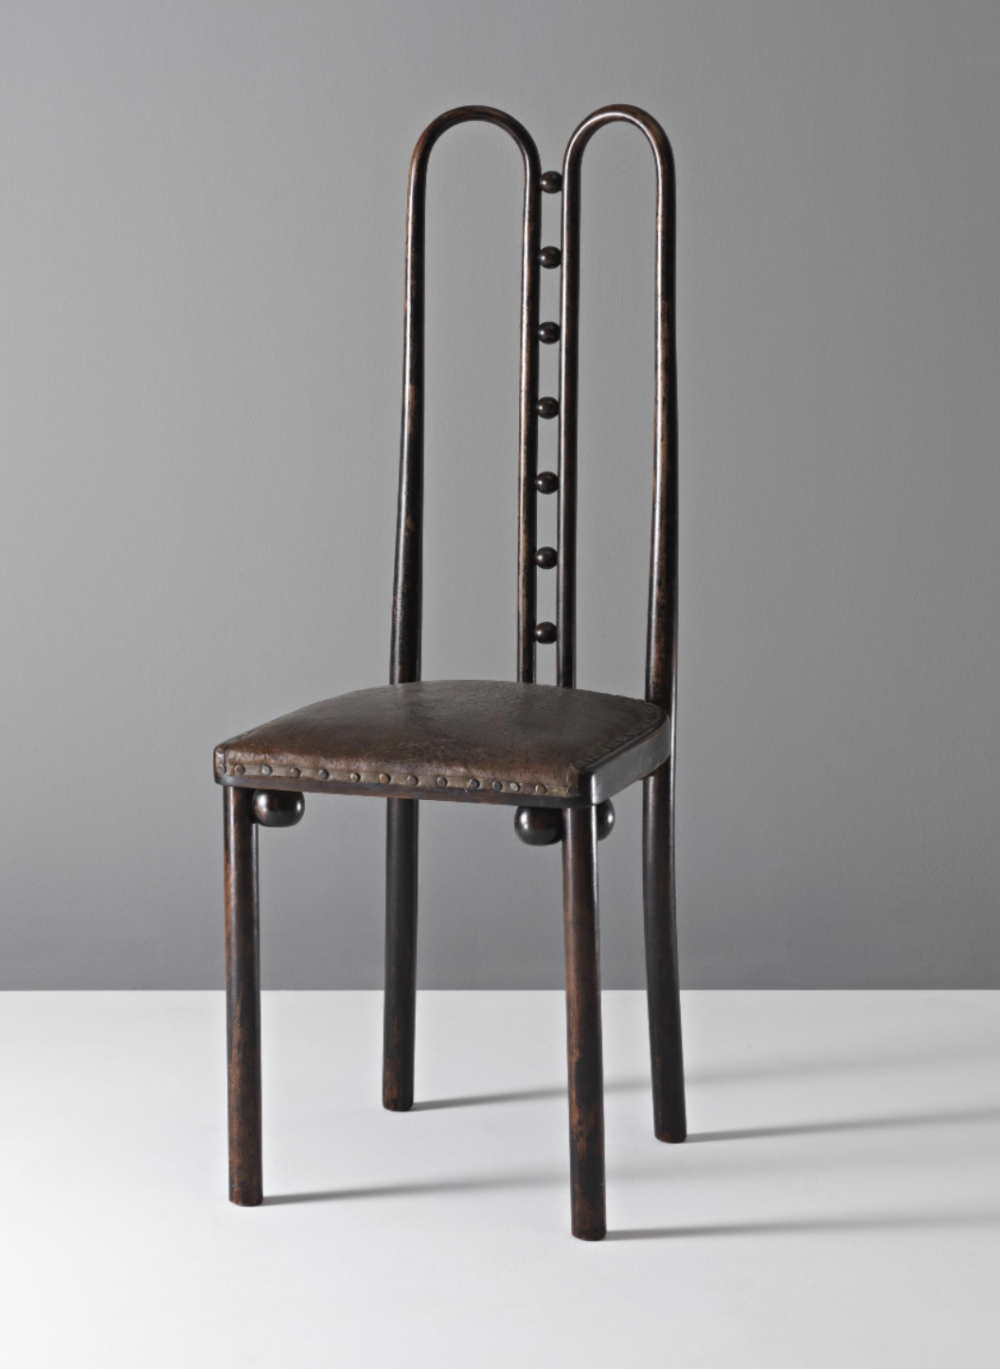 Josef hoffmann  rare side chair  model no. 371  1908